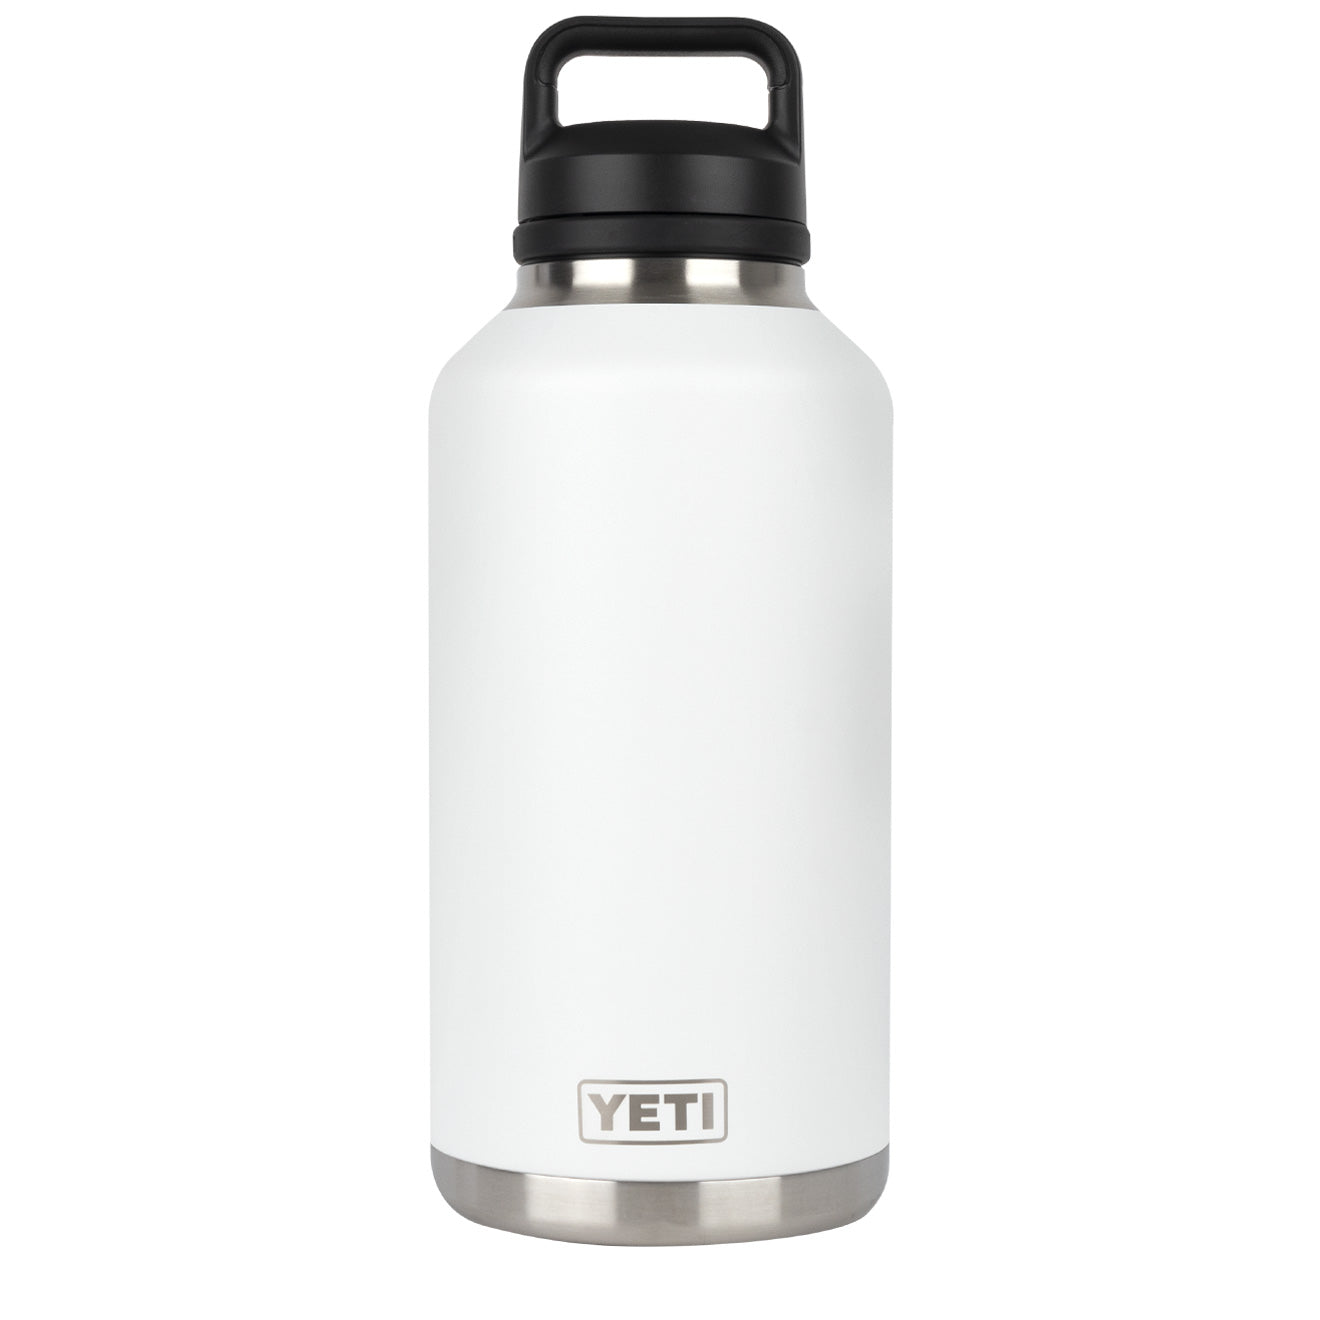 YETI / Rambler 64 oz Bottle - White